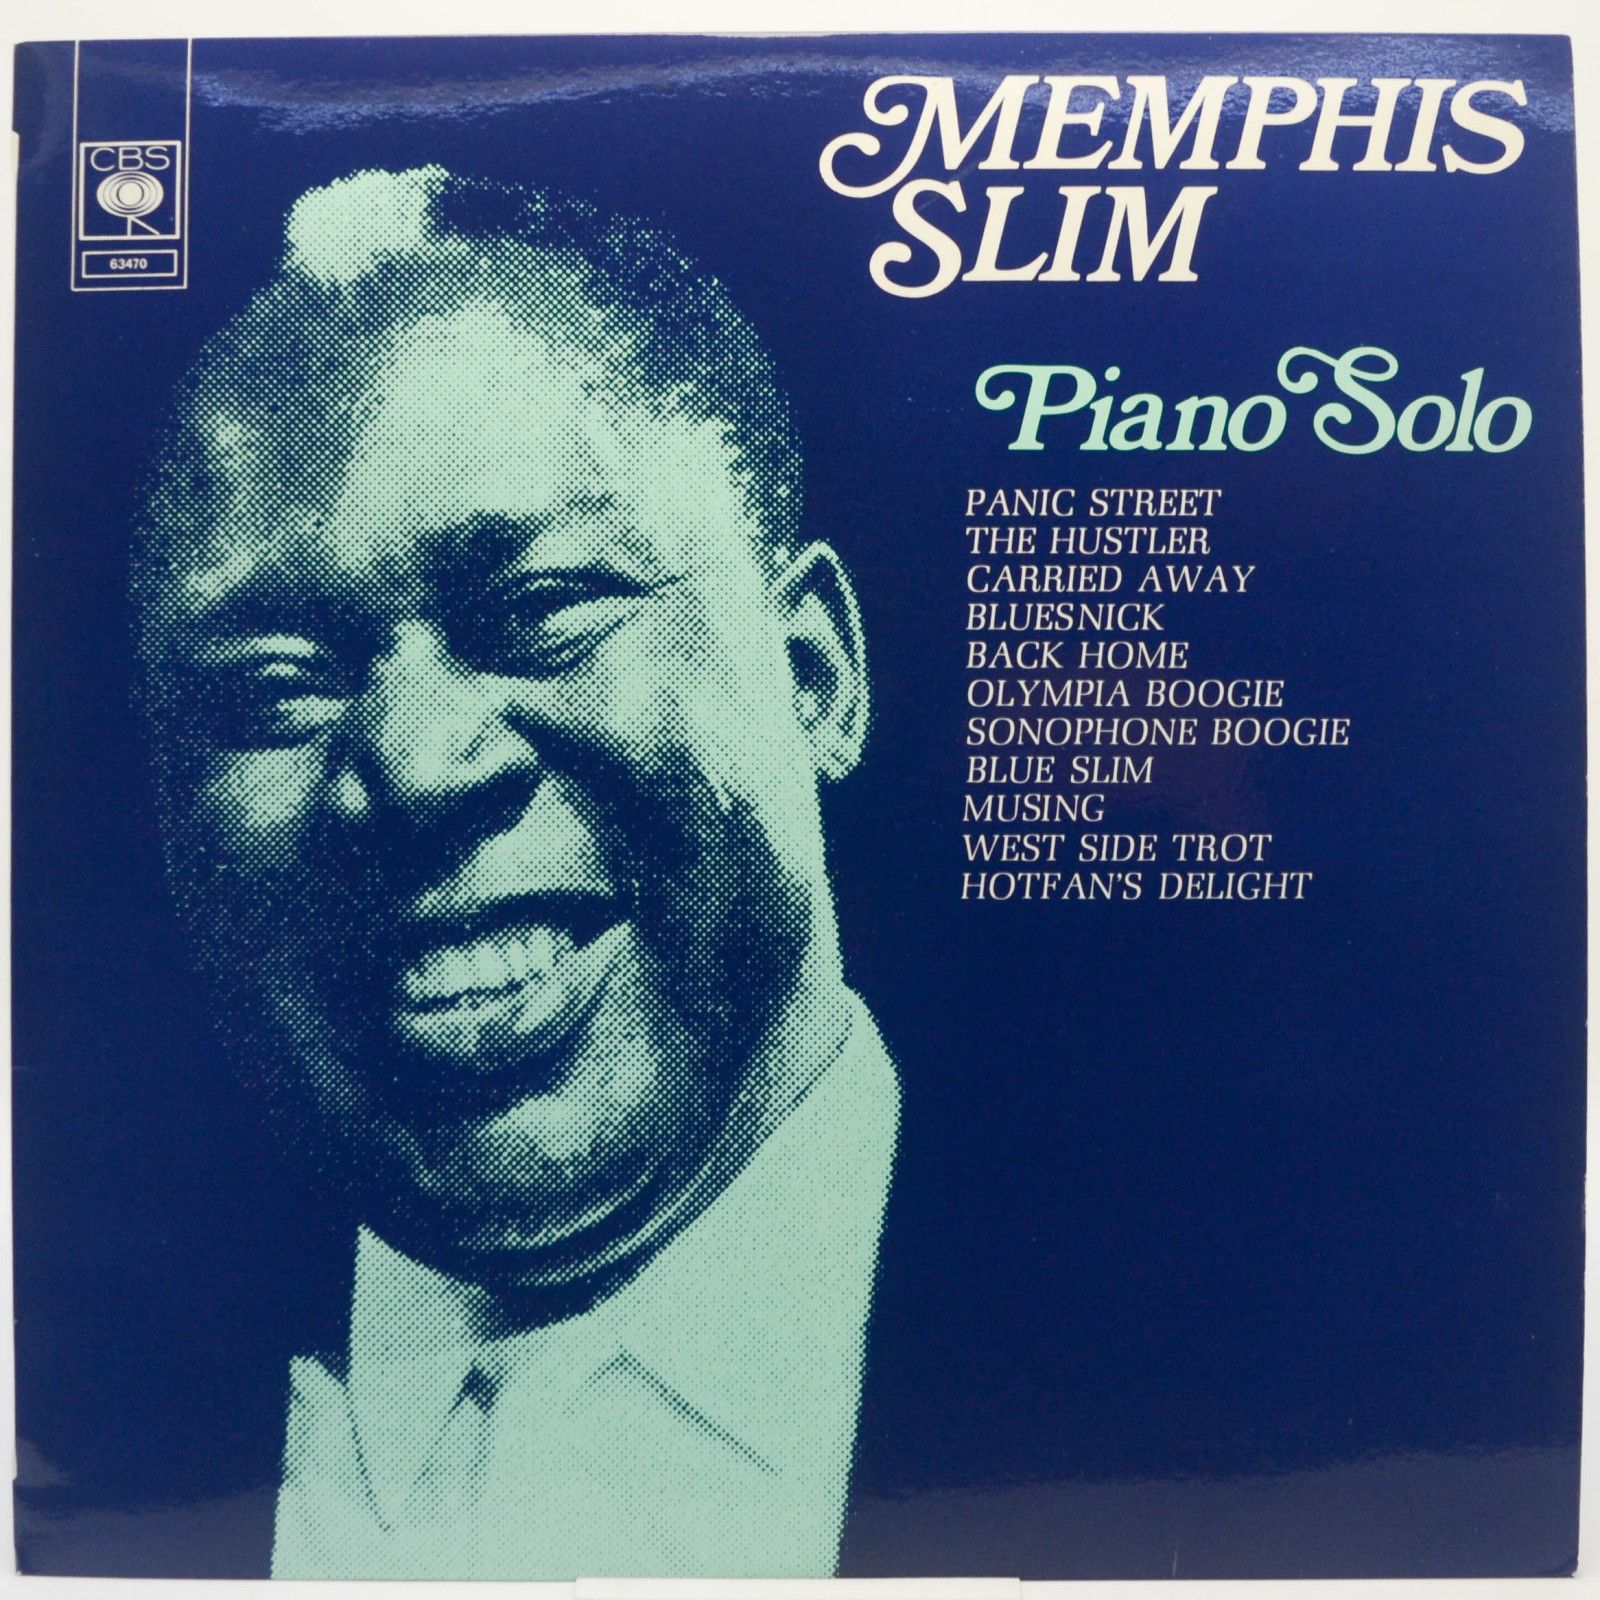 Memphis Slim — Piano Solo, 1961